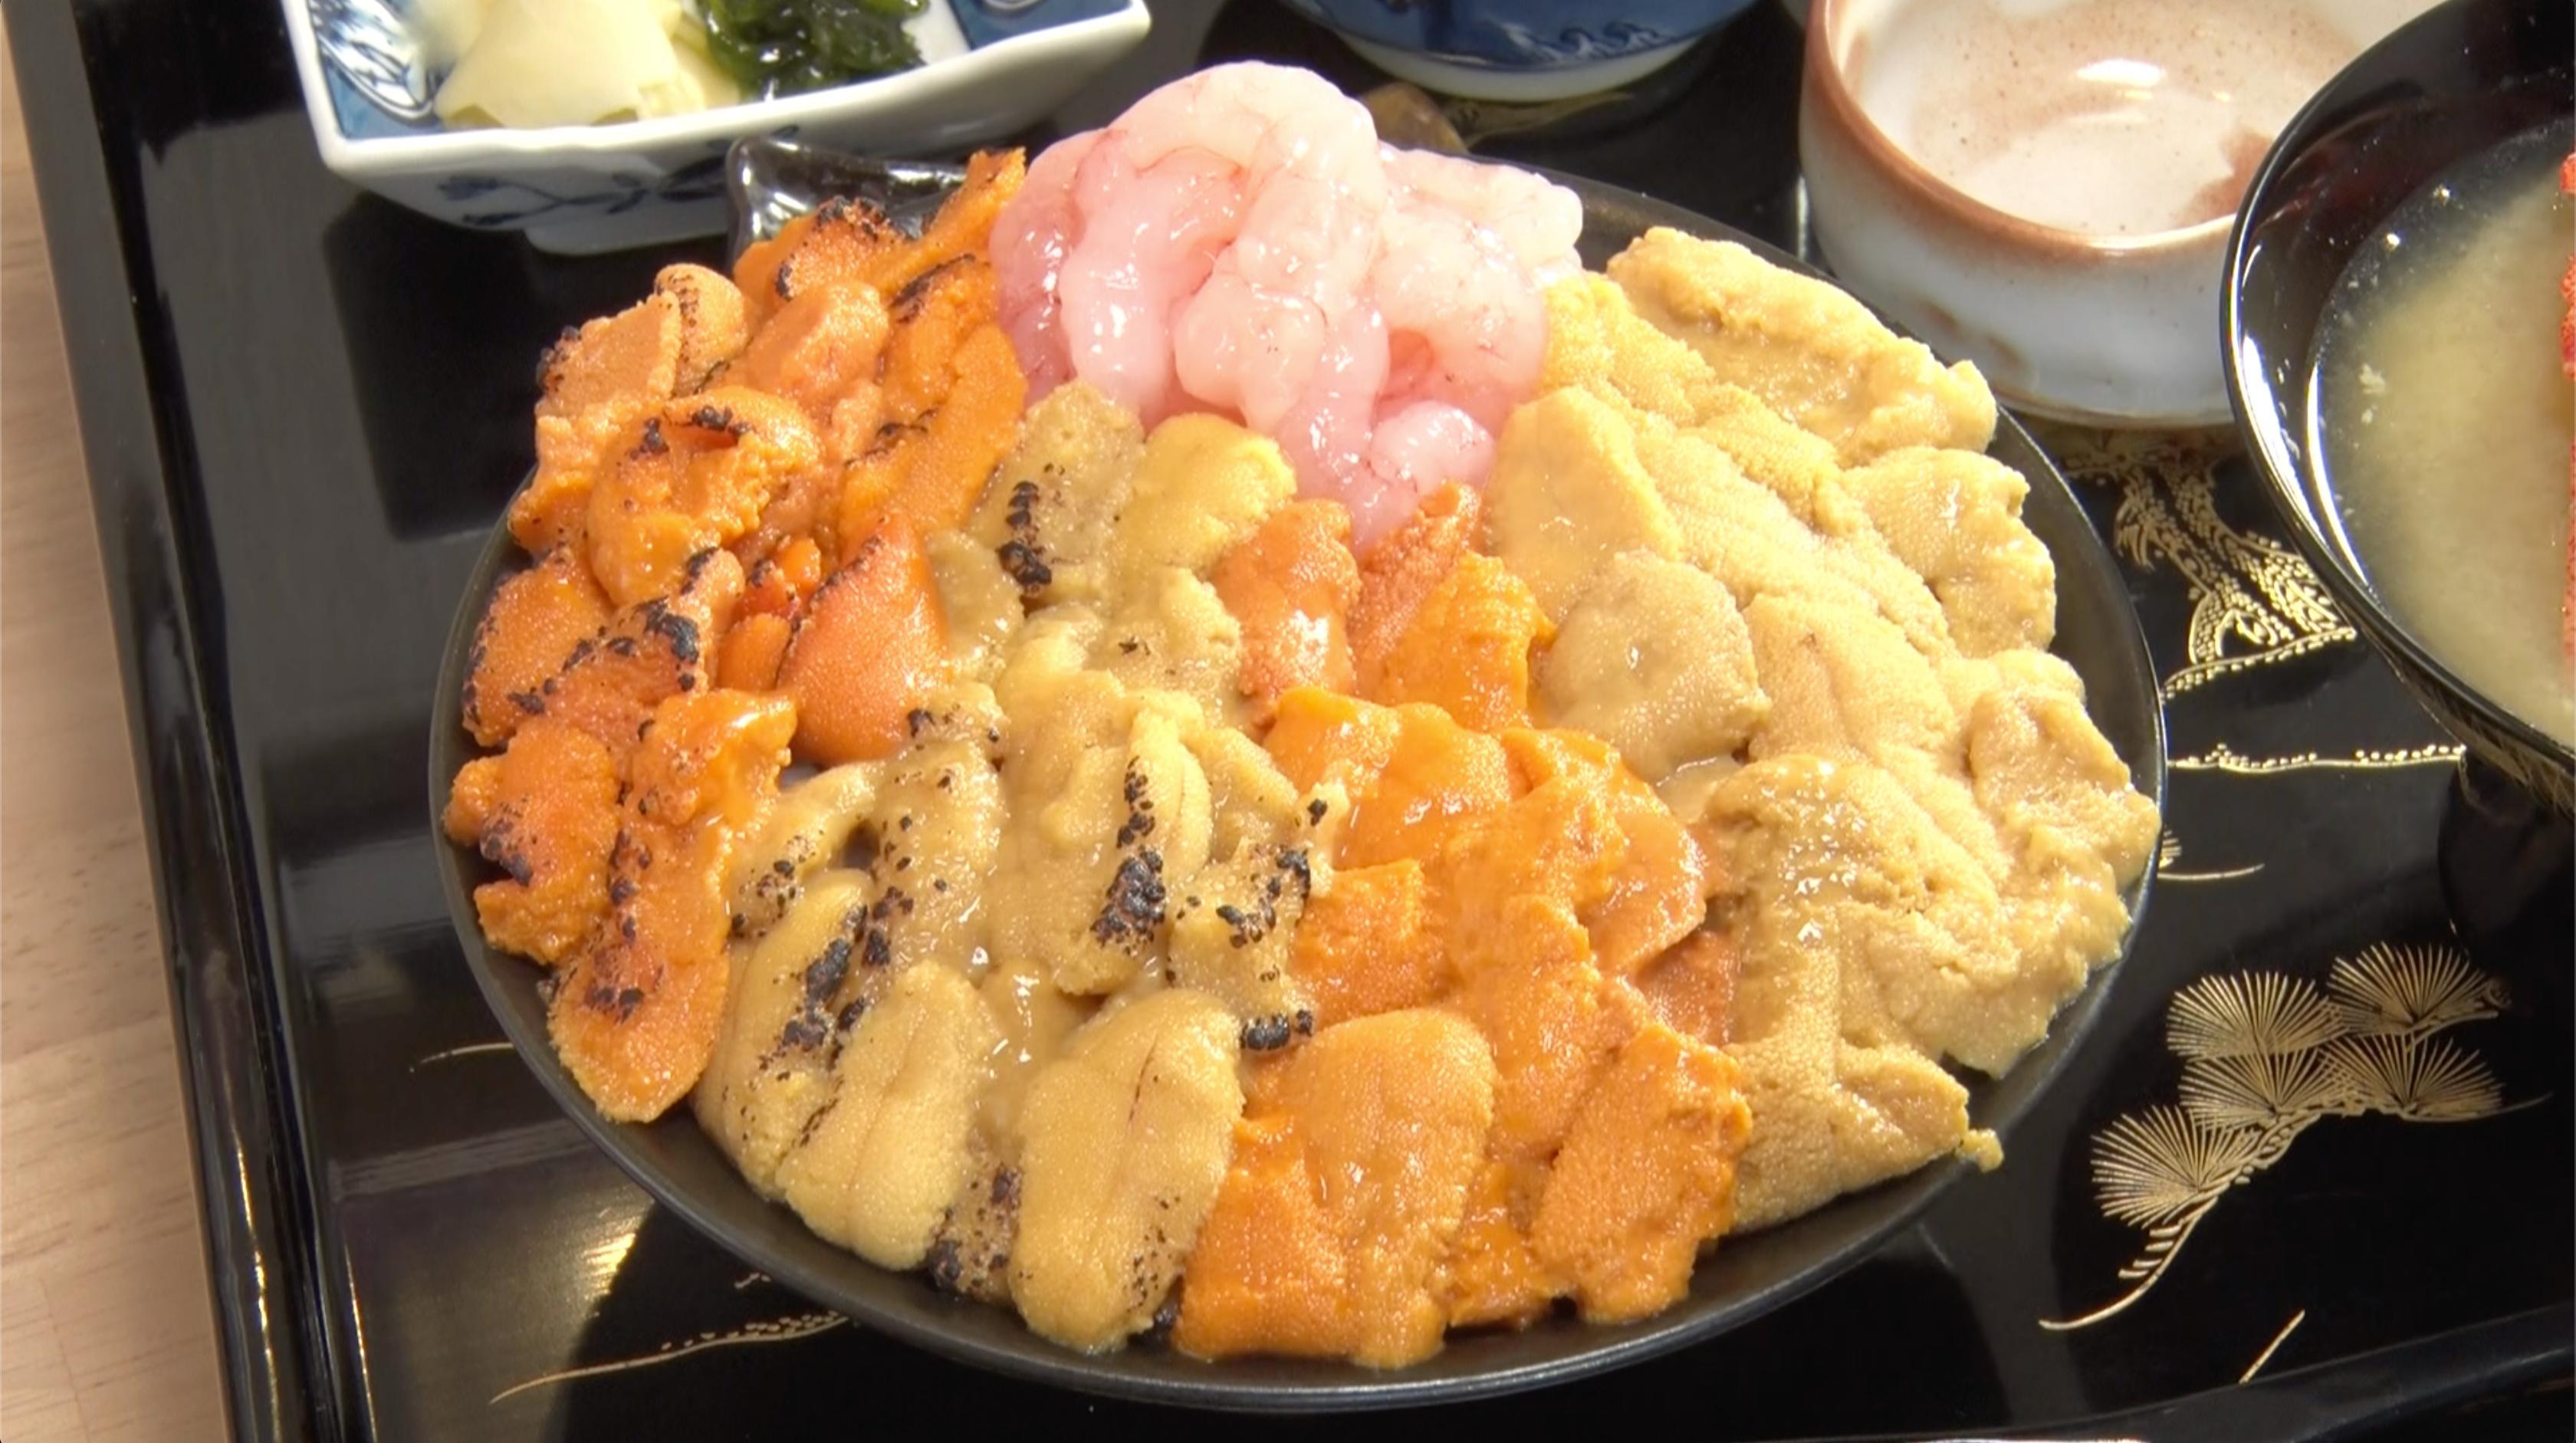 ウニ カニ さらに最高級さくらんぼ食べ放題も 北海道の穴場観光地とは 所さんお届けモノです の気になるトコロ Mbsコラム